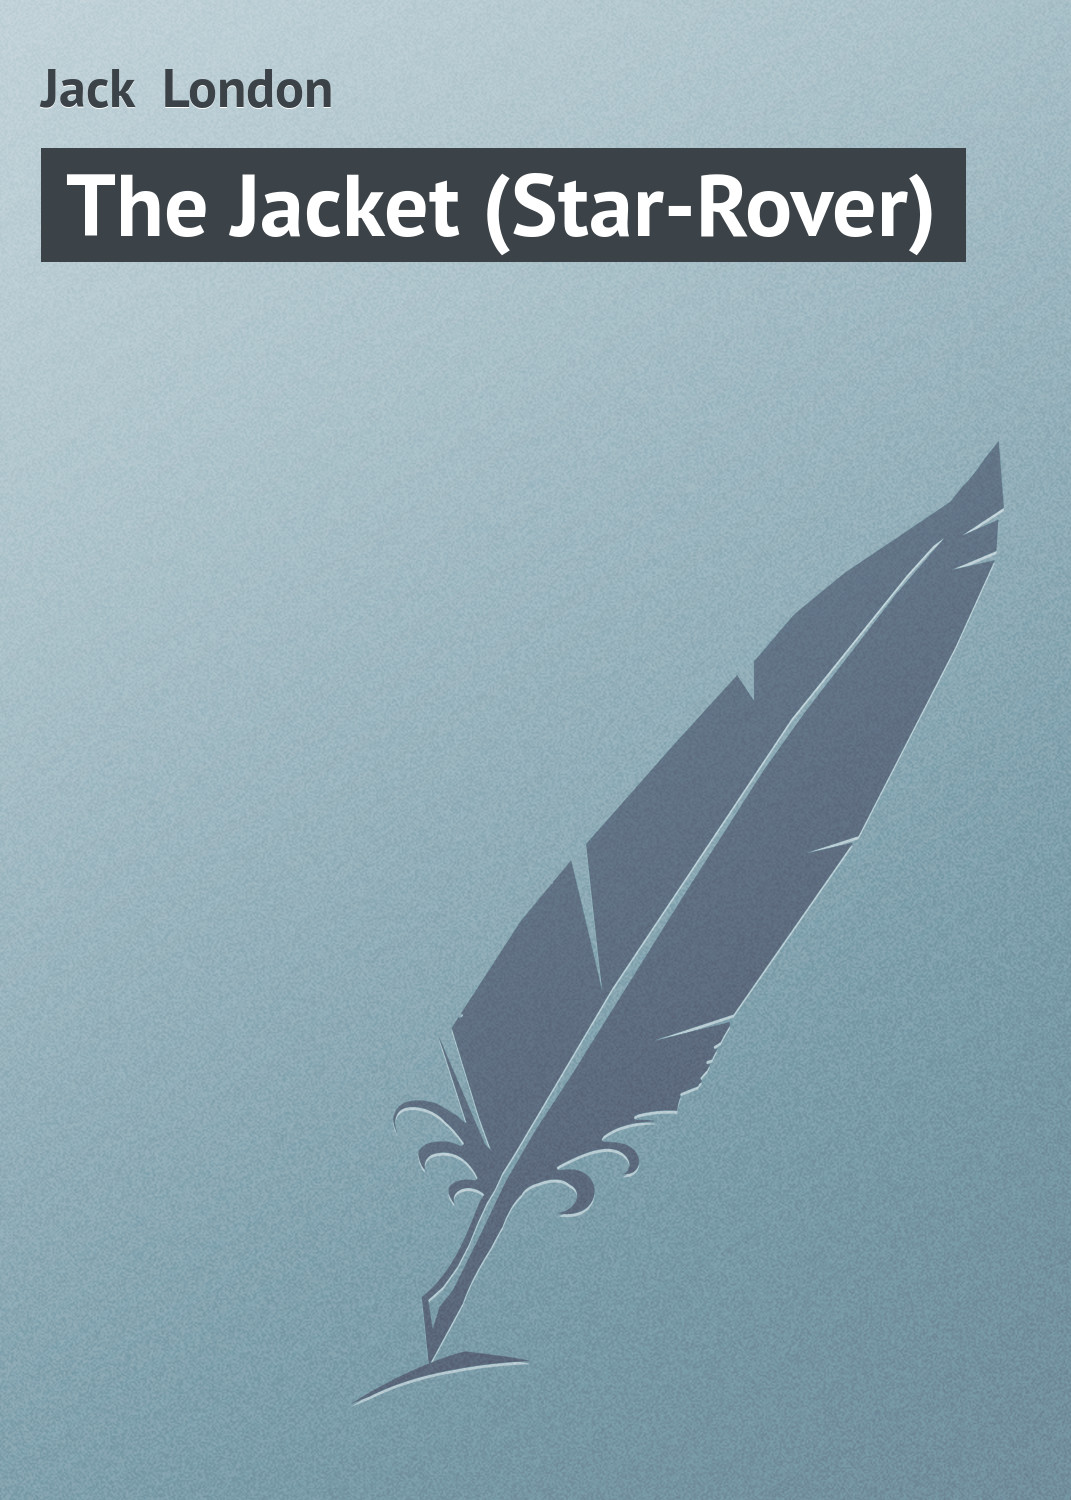 Книга The Jacket (Star-Rover) из серии , созданная Jack London, может относится к жанру Дом и Семья: прочее, Зарубежная классика. Стоимость книги The Jacket (Star-Rover)  с идентификатором 21103174 составляет 5.99 руб.